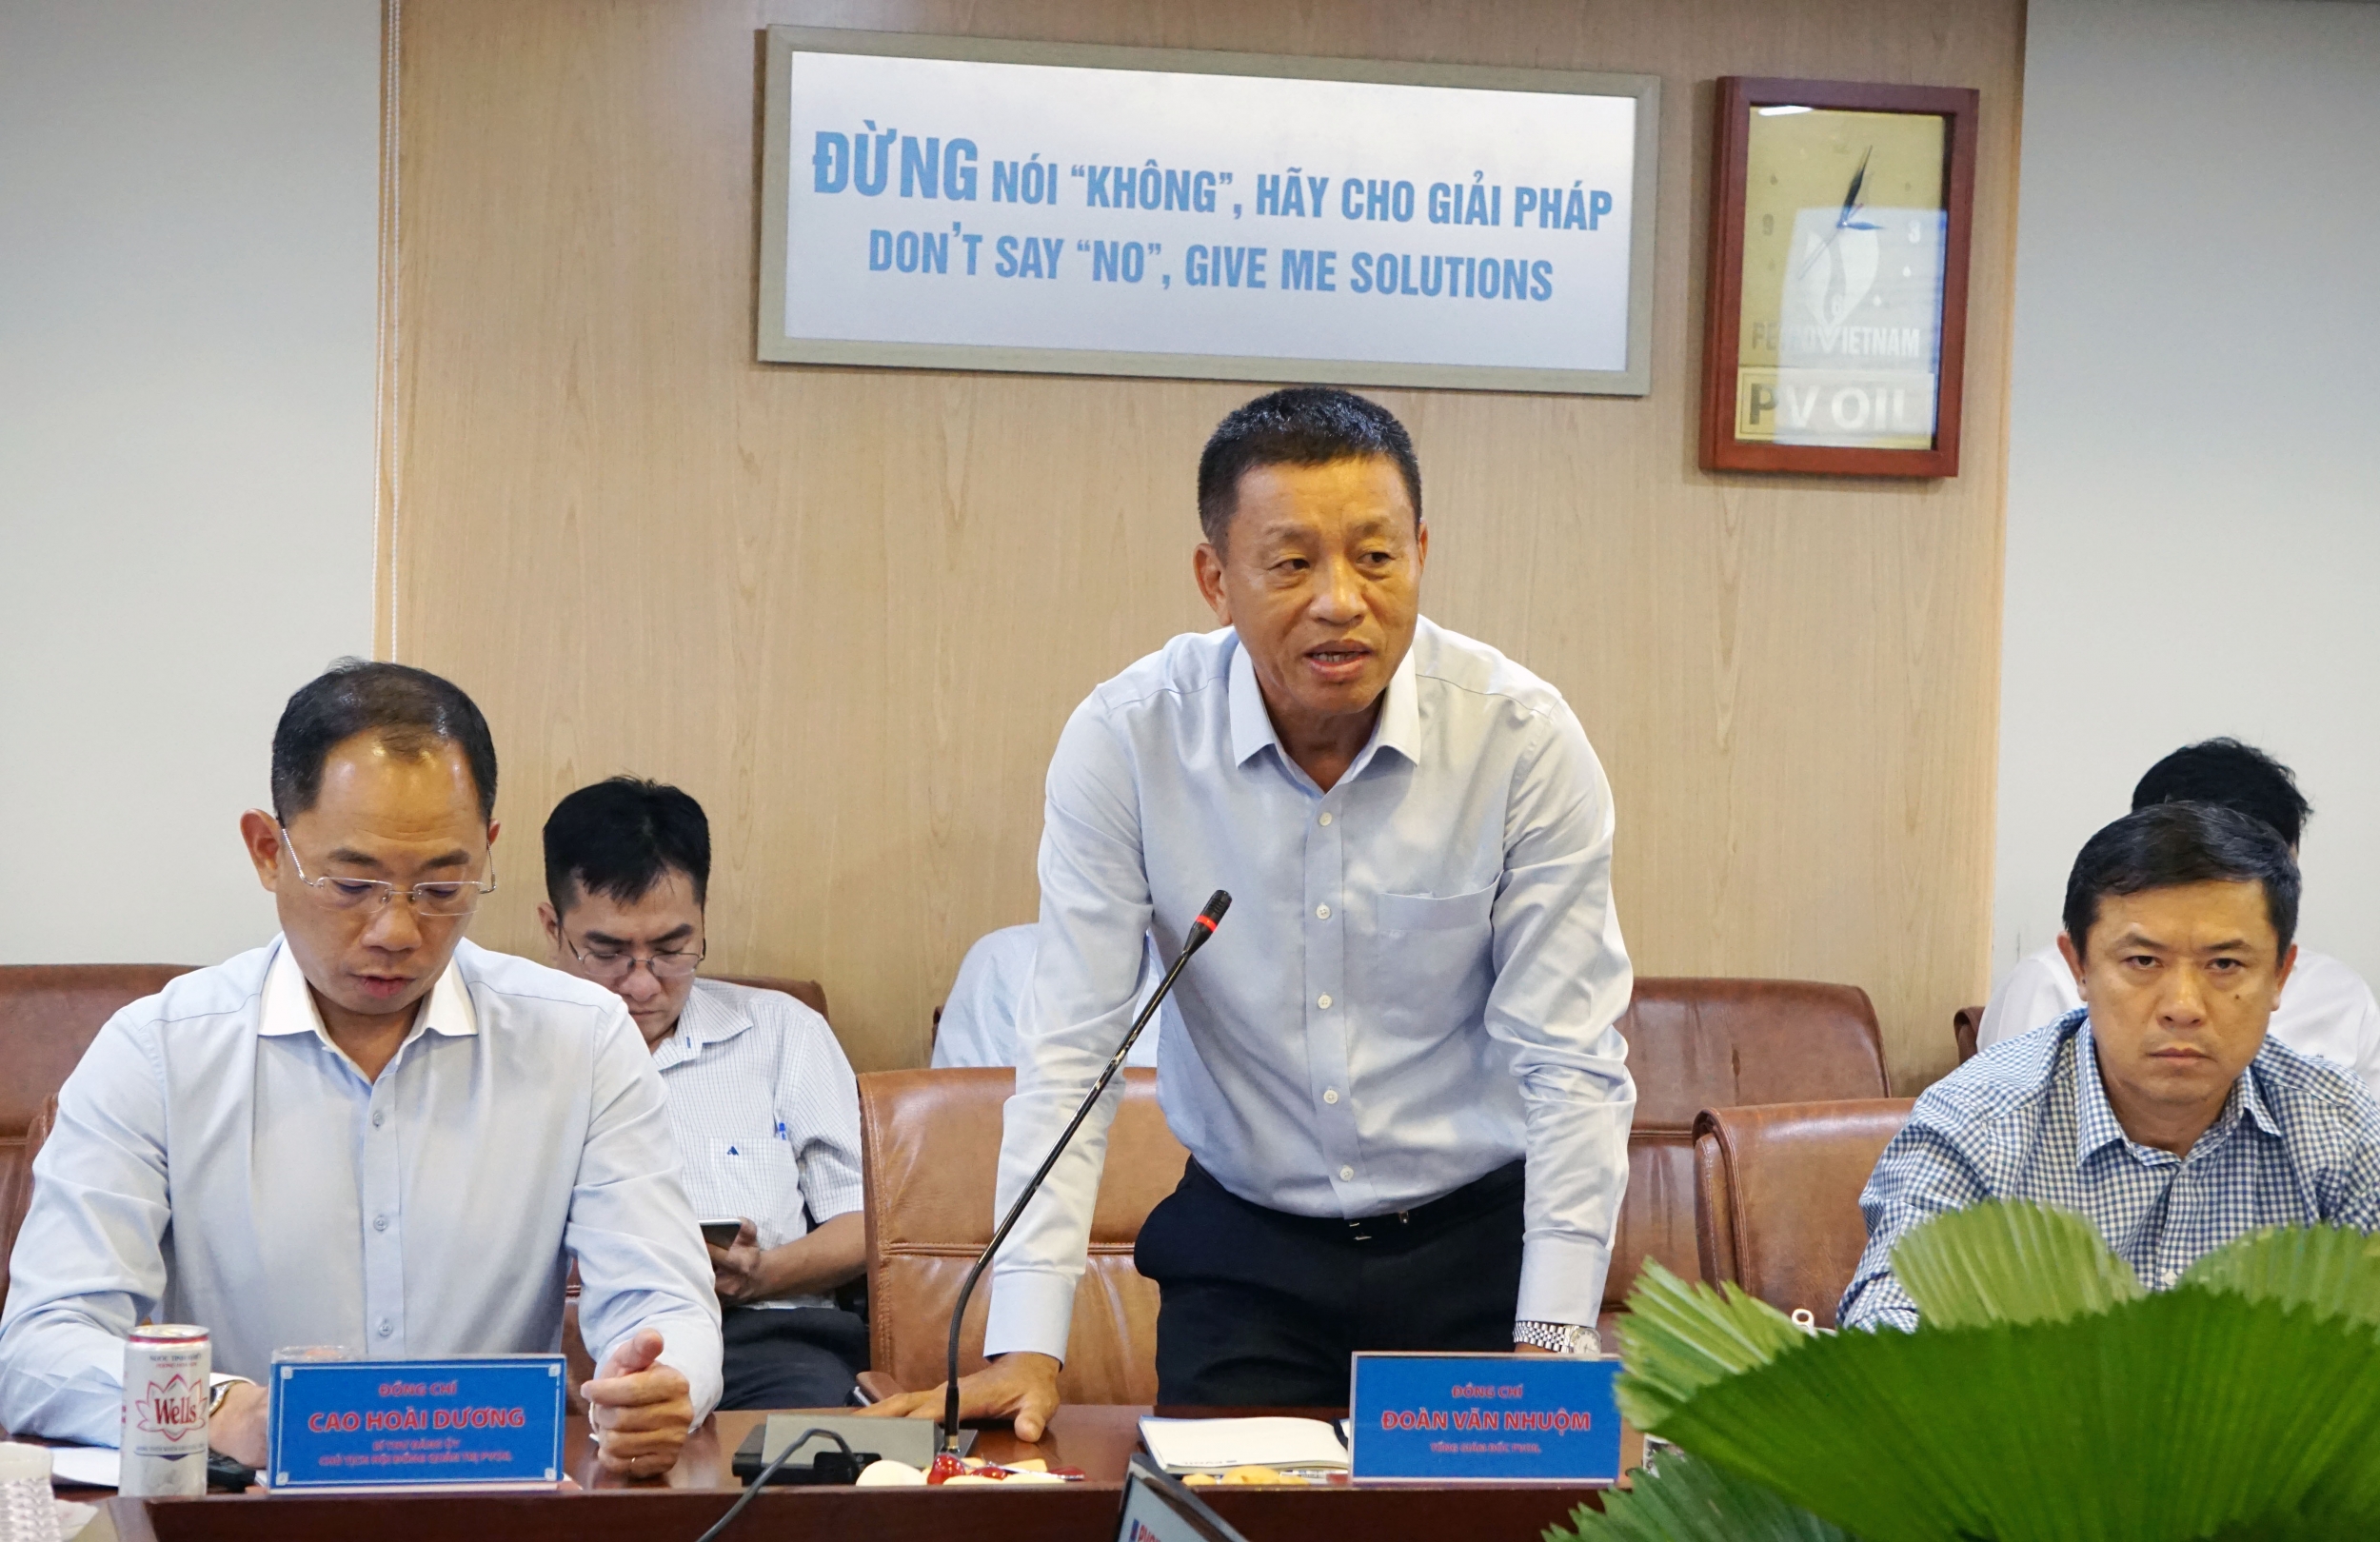 Đồng chí Đoàn Văn Nhuộm - Tổng giám đốc PVOIL phát biểu